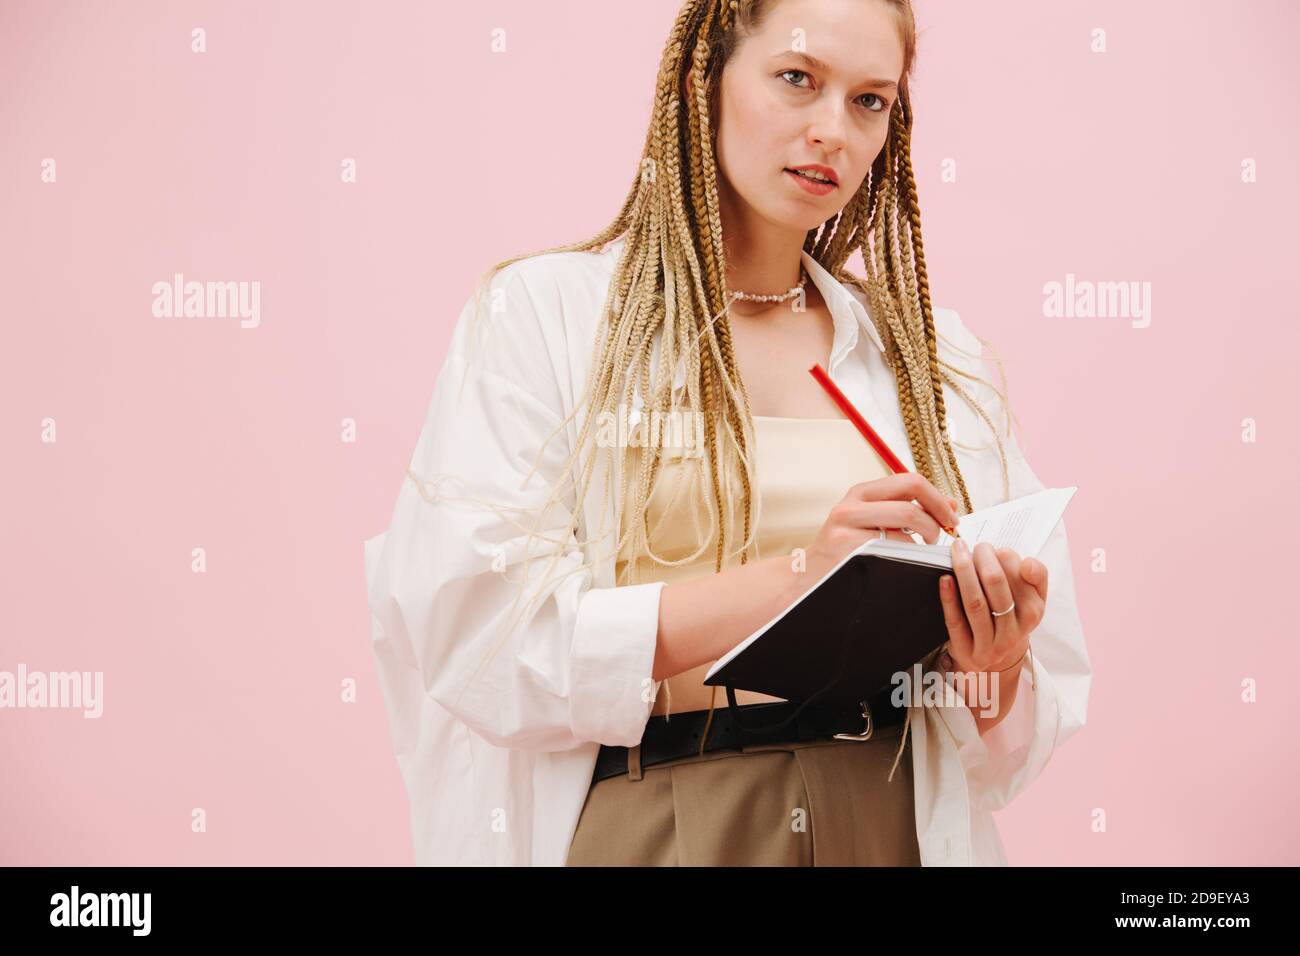 Jeune femme enthousiaste avec des tresses afro blondes élégantes un carnet sur rose Banque D'Images